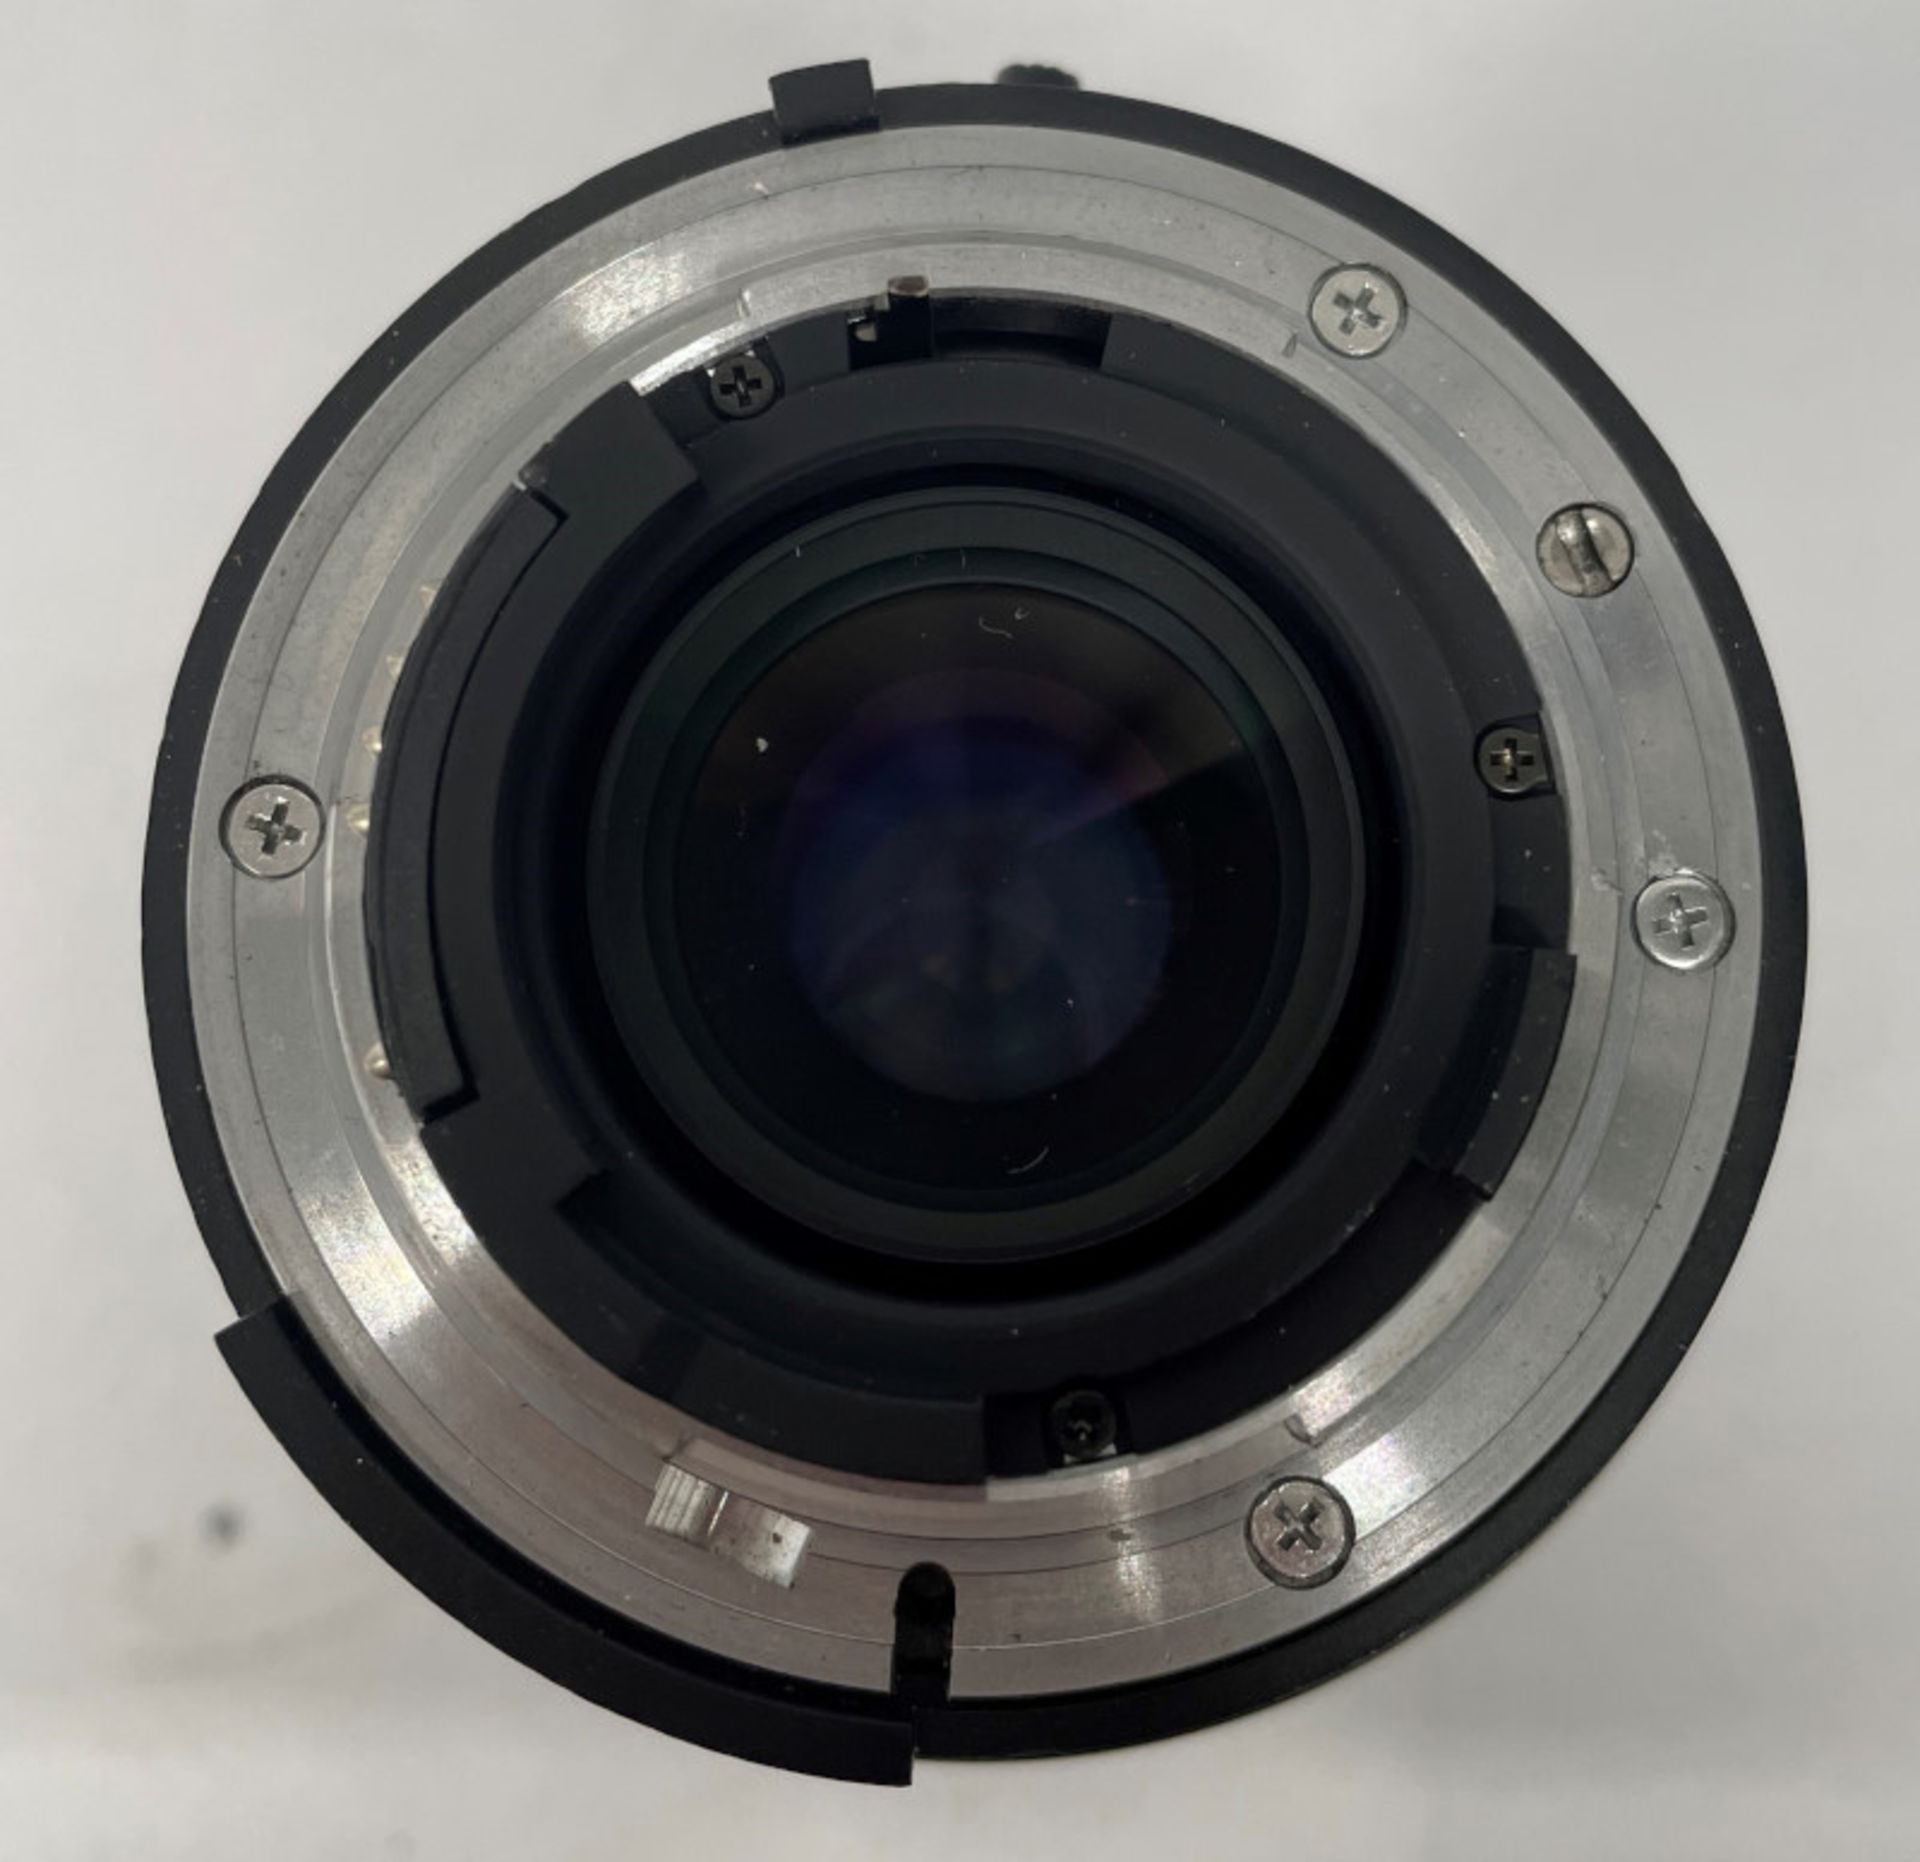 Nikon AF Nikkor 70-210mm - 1:4-5.6 Lens - Serial No. 2432165 with HOYA 62mm UV(O) Filter - Image 5 of 6